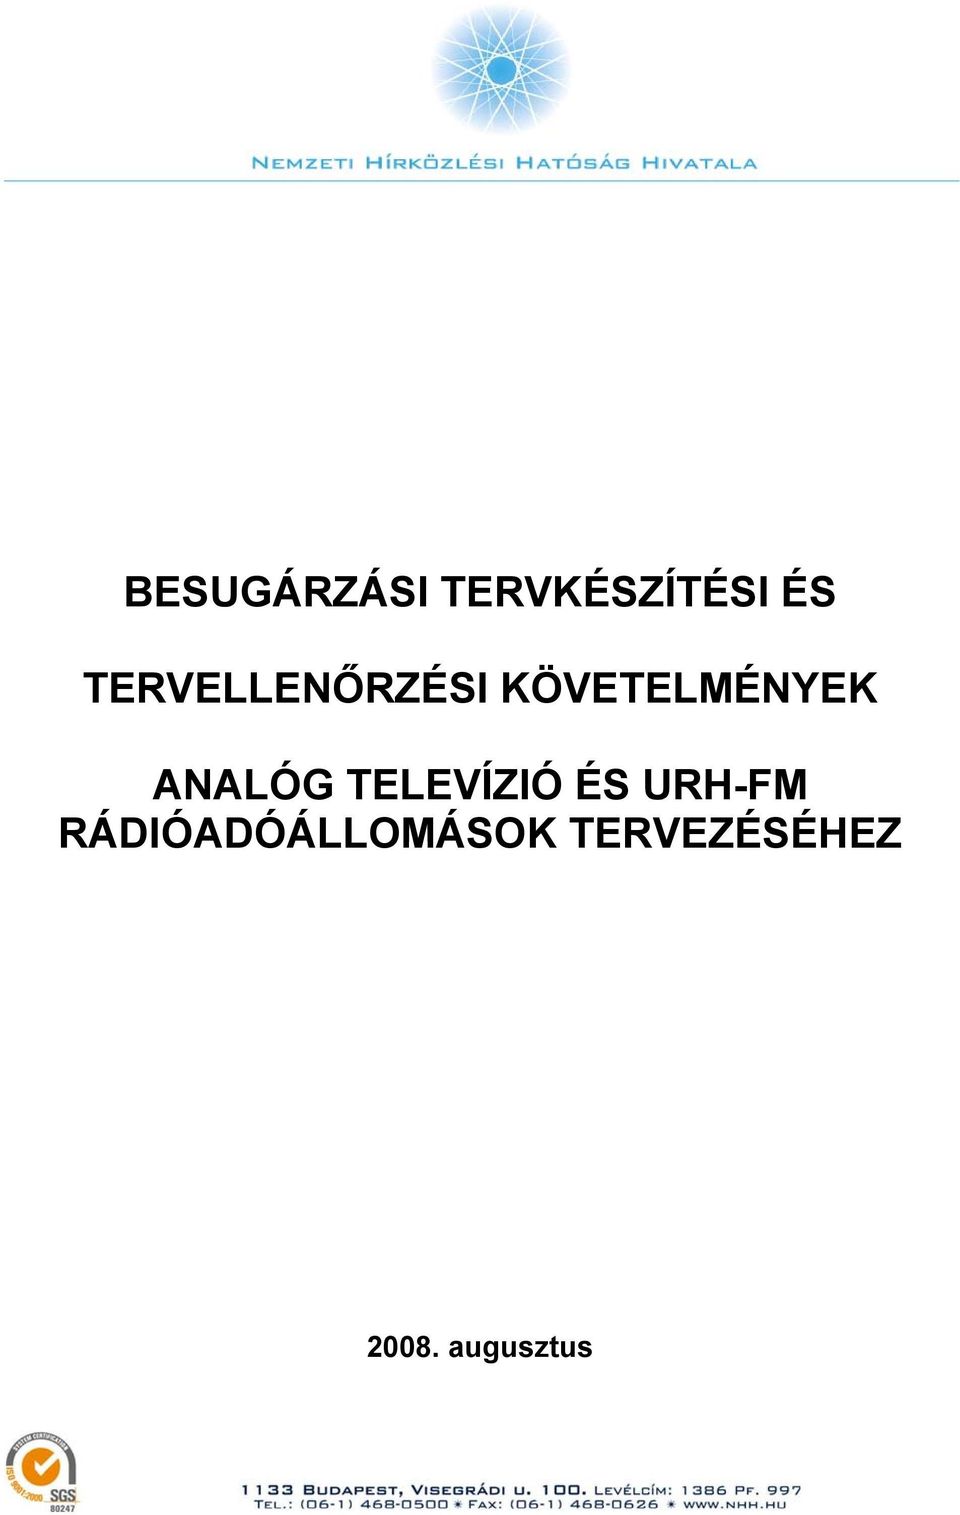 ANALÓG TELEVÍZIÓ ÉS URH-FM